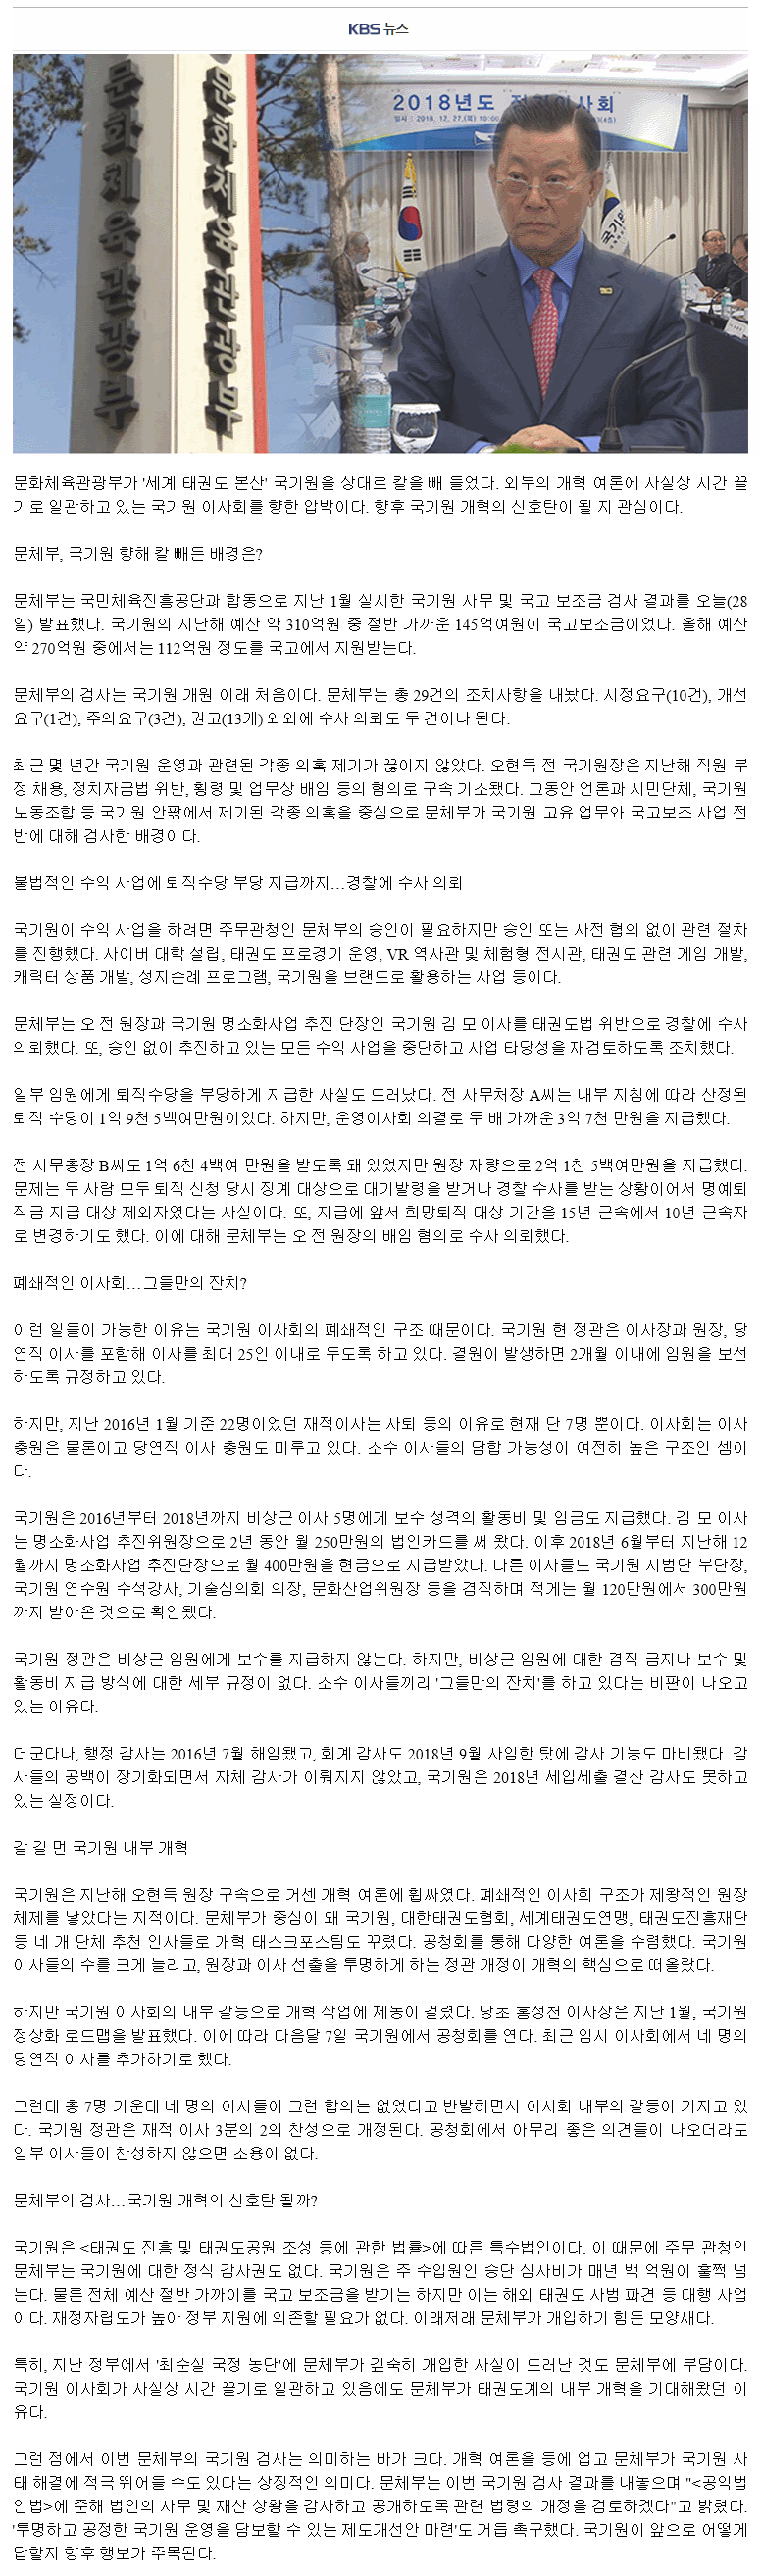 20190324_칼빼든문체부국기원개혁신호탄_kbs.gif